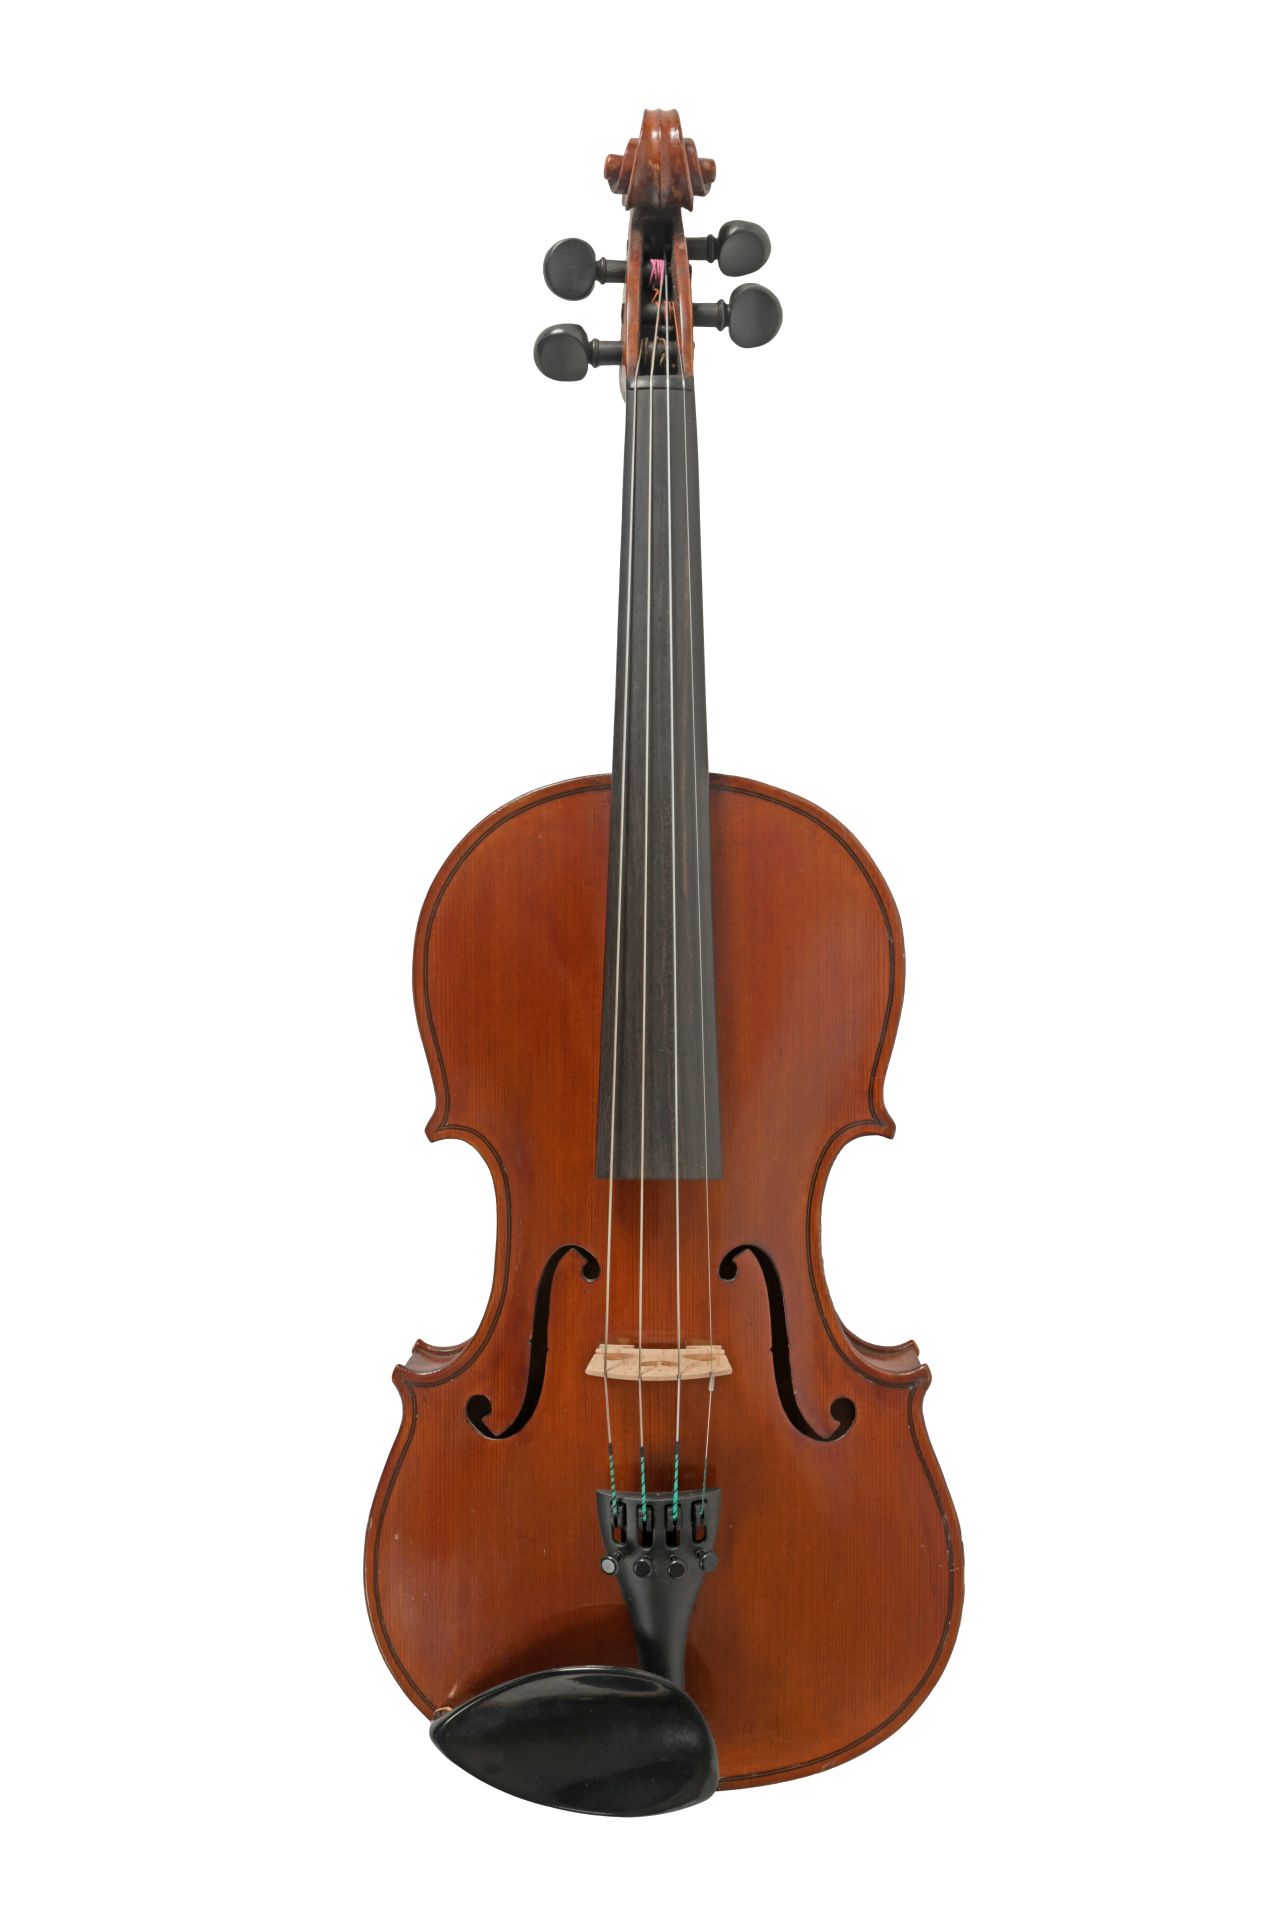 Violin branded “Made in London”